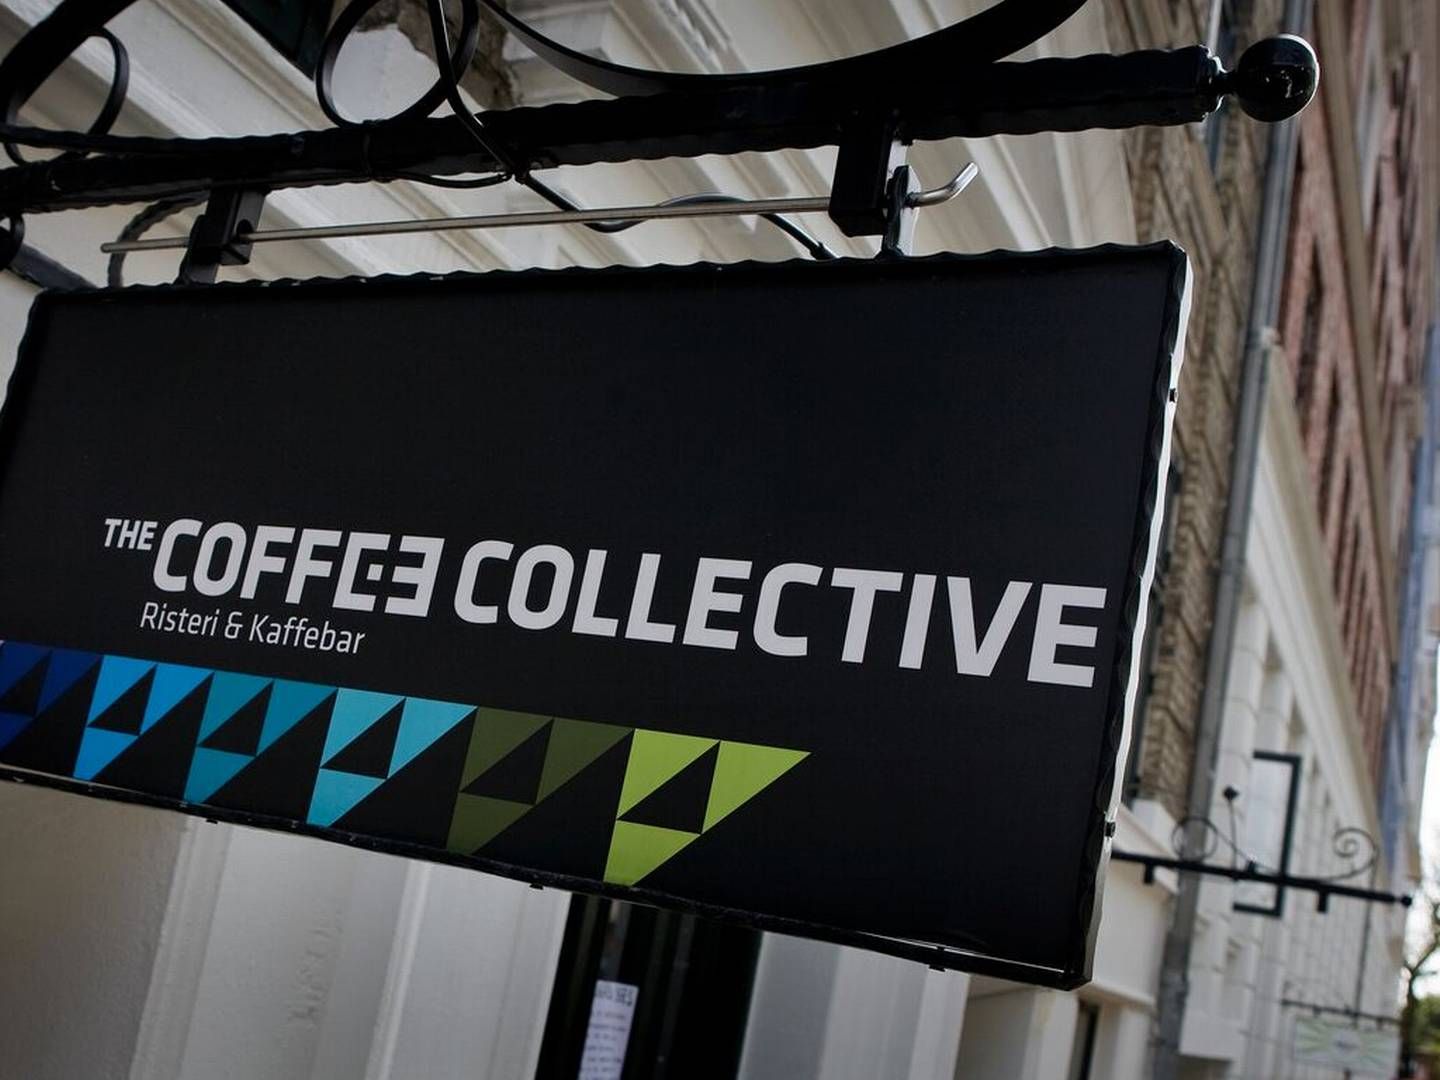 Foto: Coffee Collective/Presse